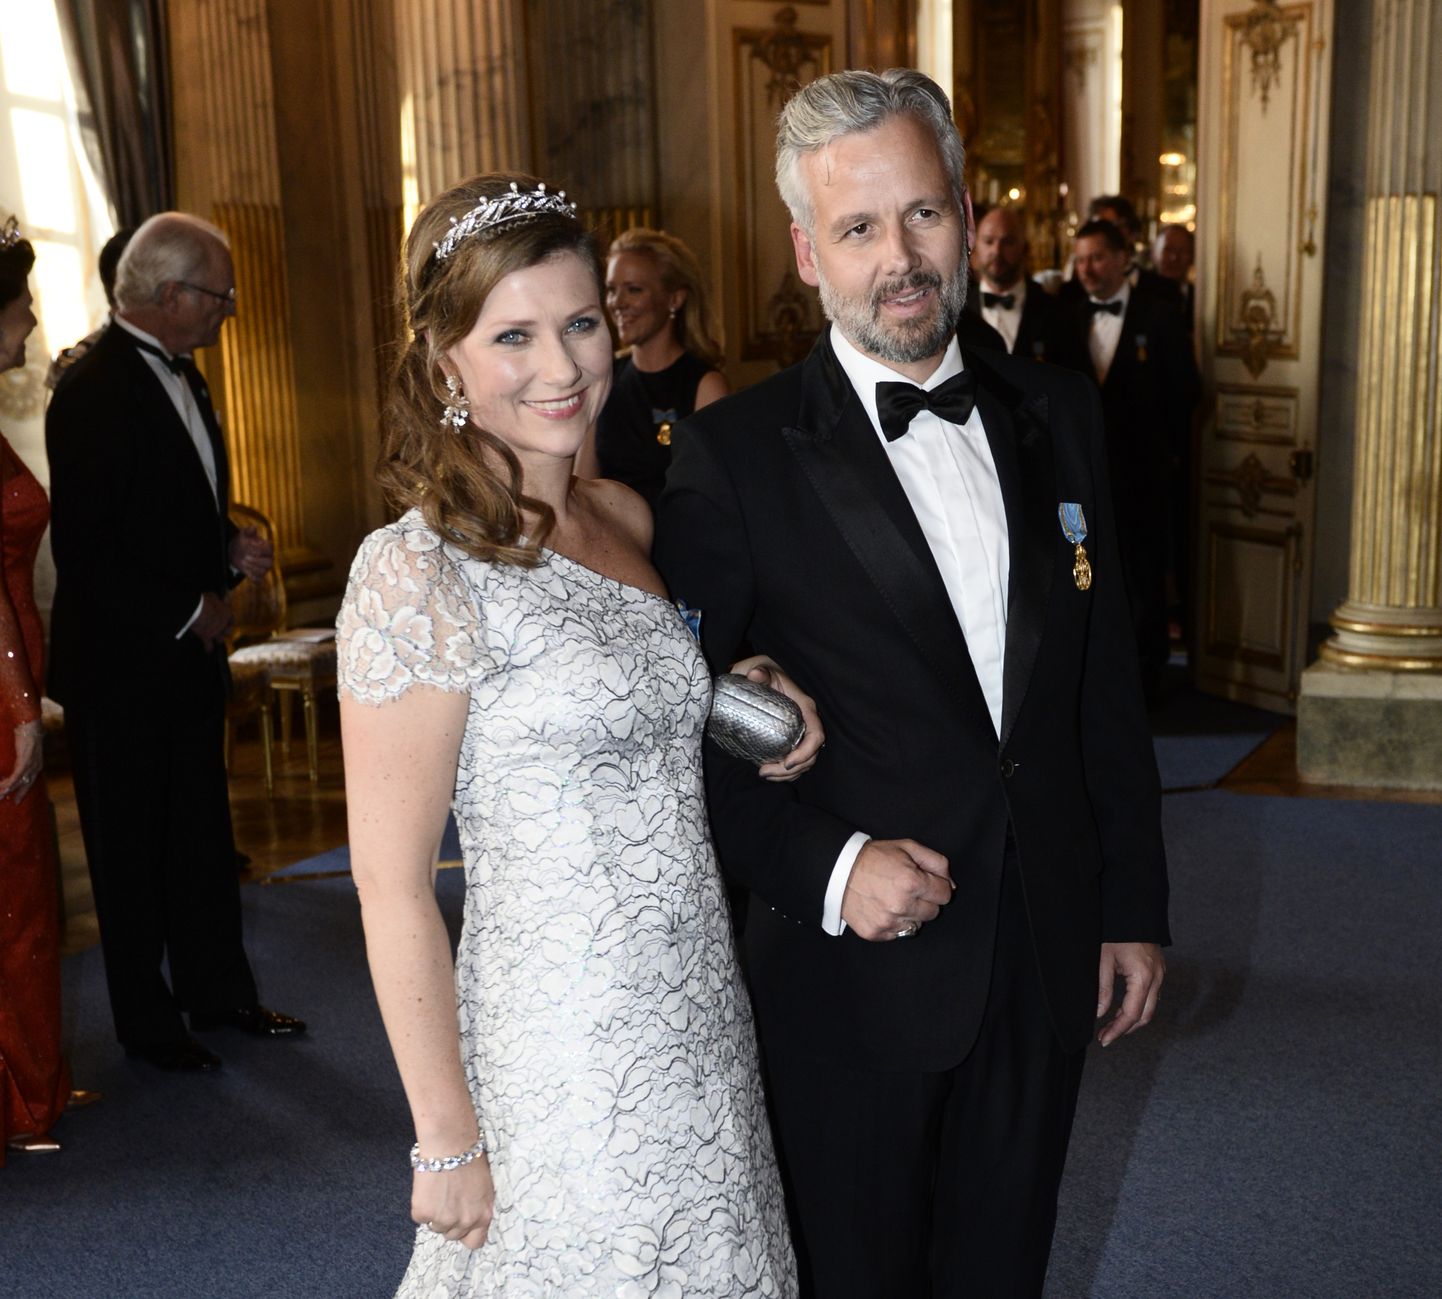 Norra printsess Märtha Louise ja ta abikaasa Ari Behn 2016